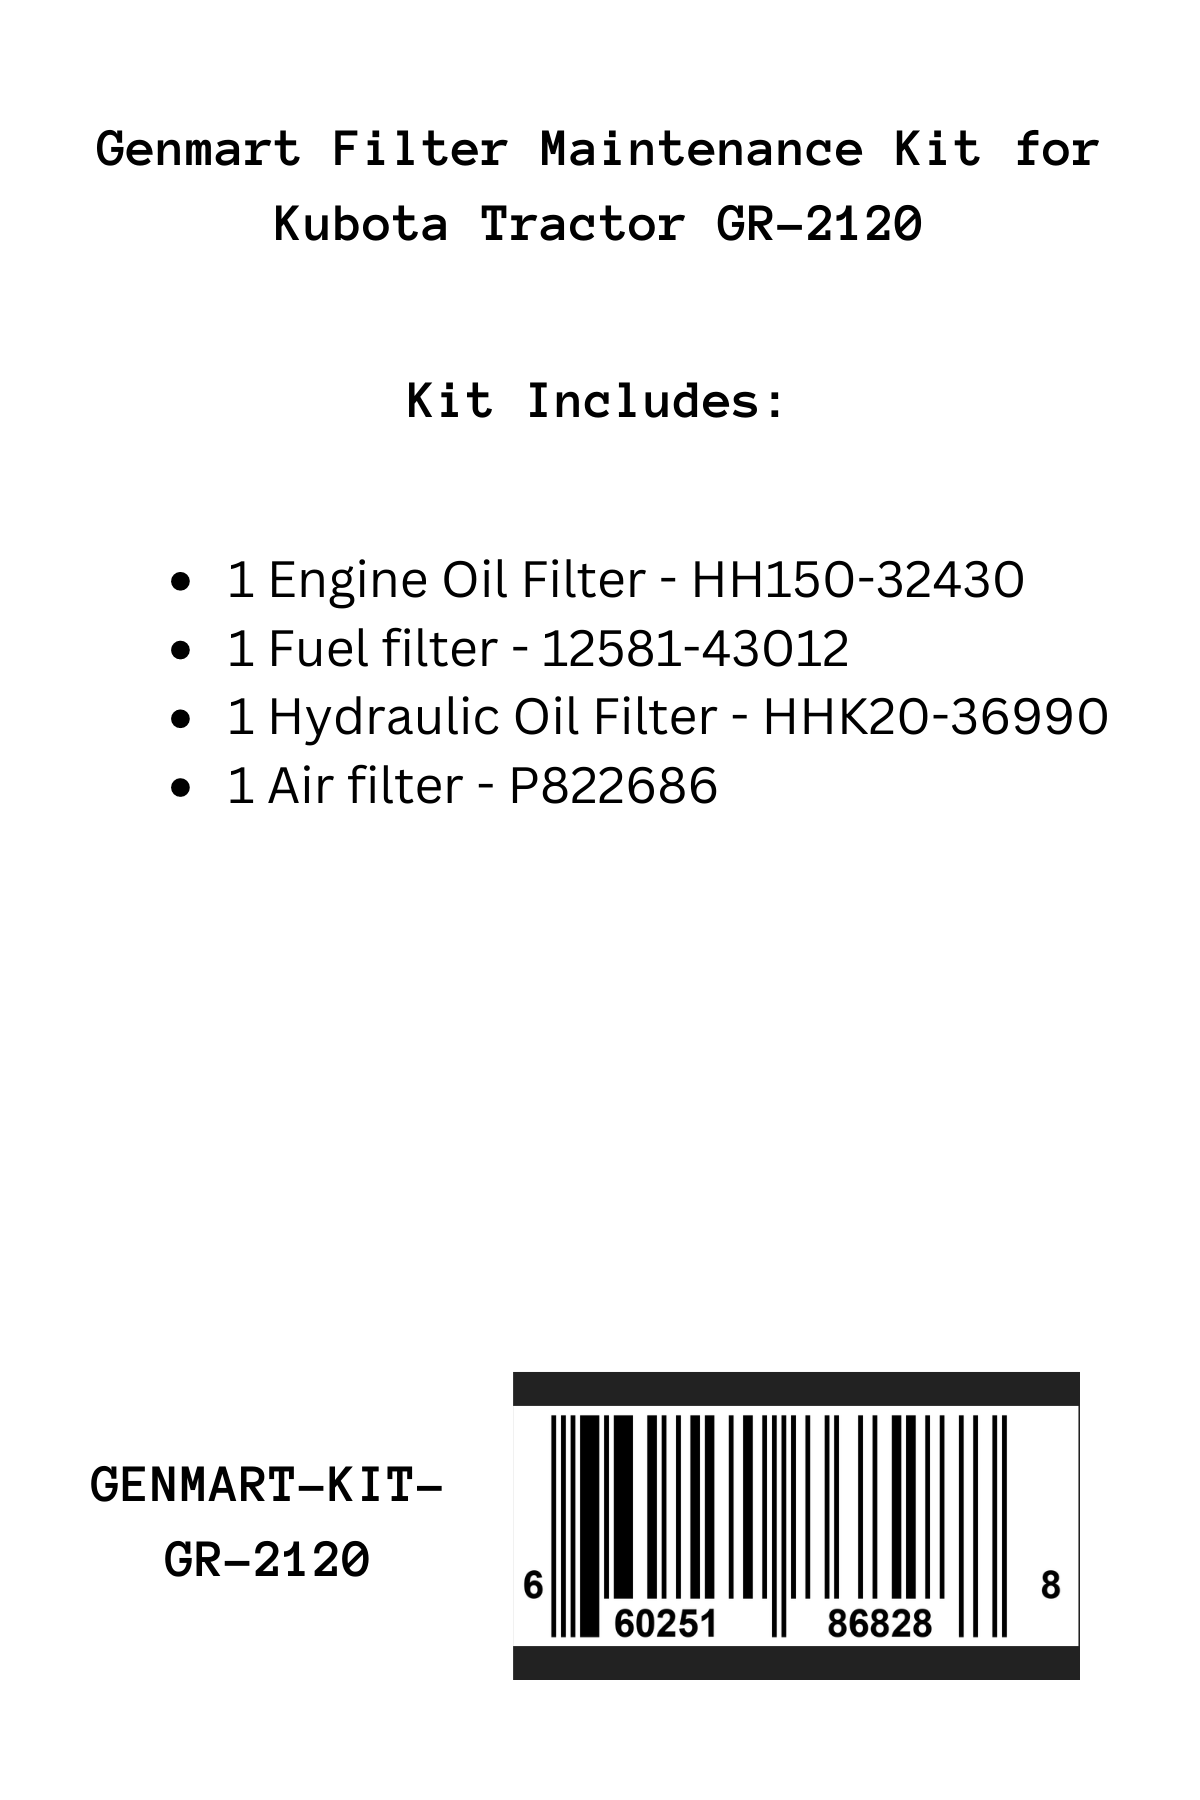 Genmart Maintenance Kit for Kubota Tractor GR-2120